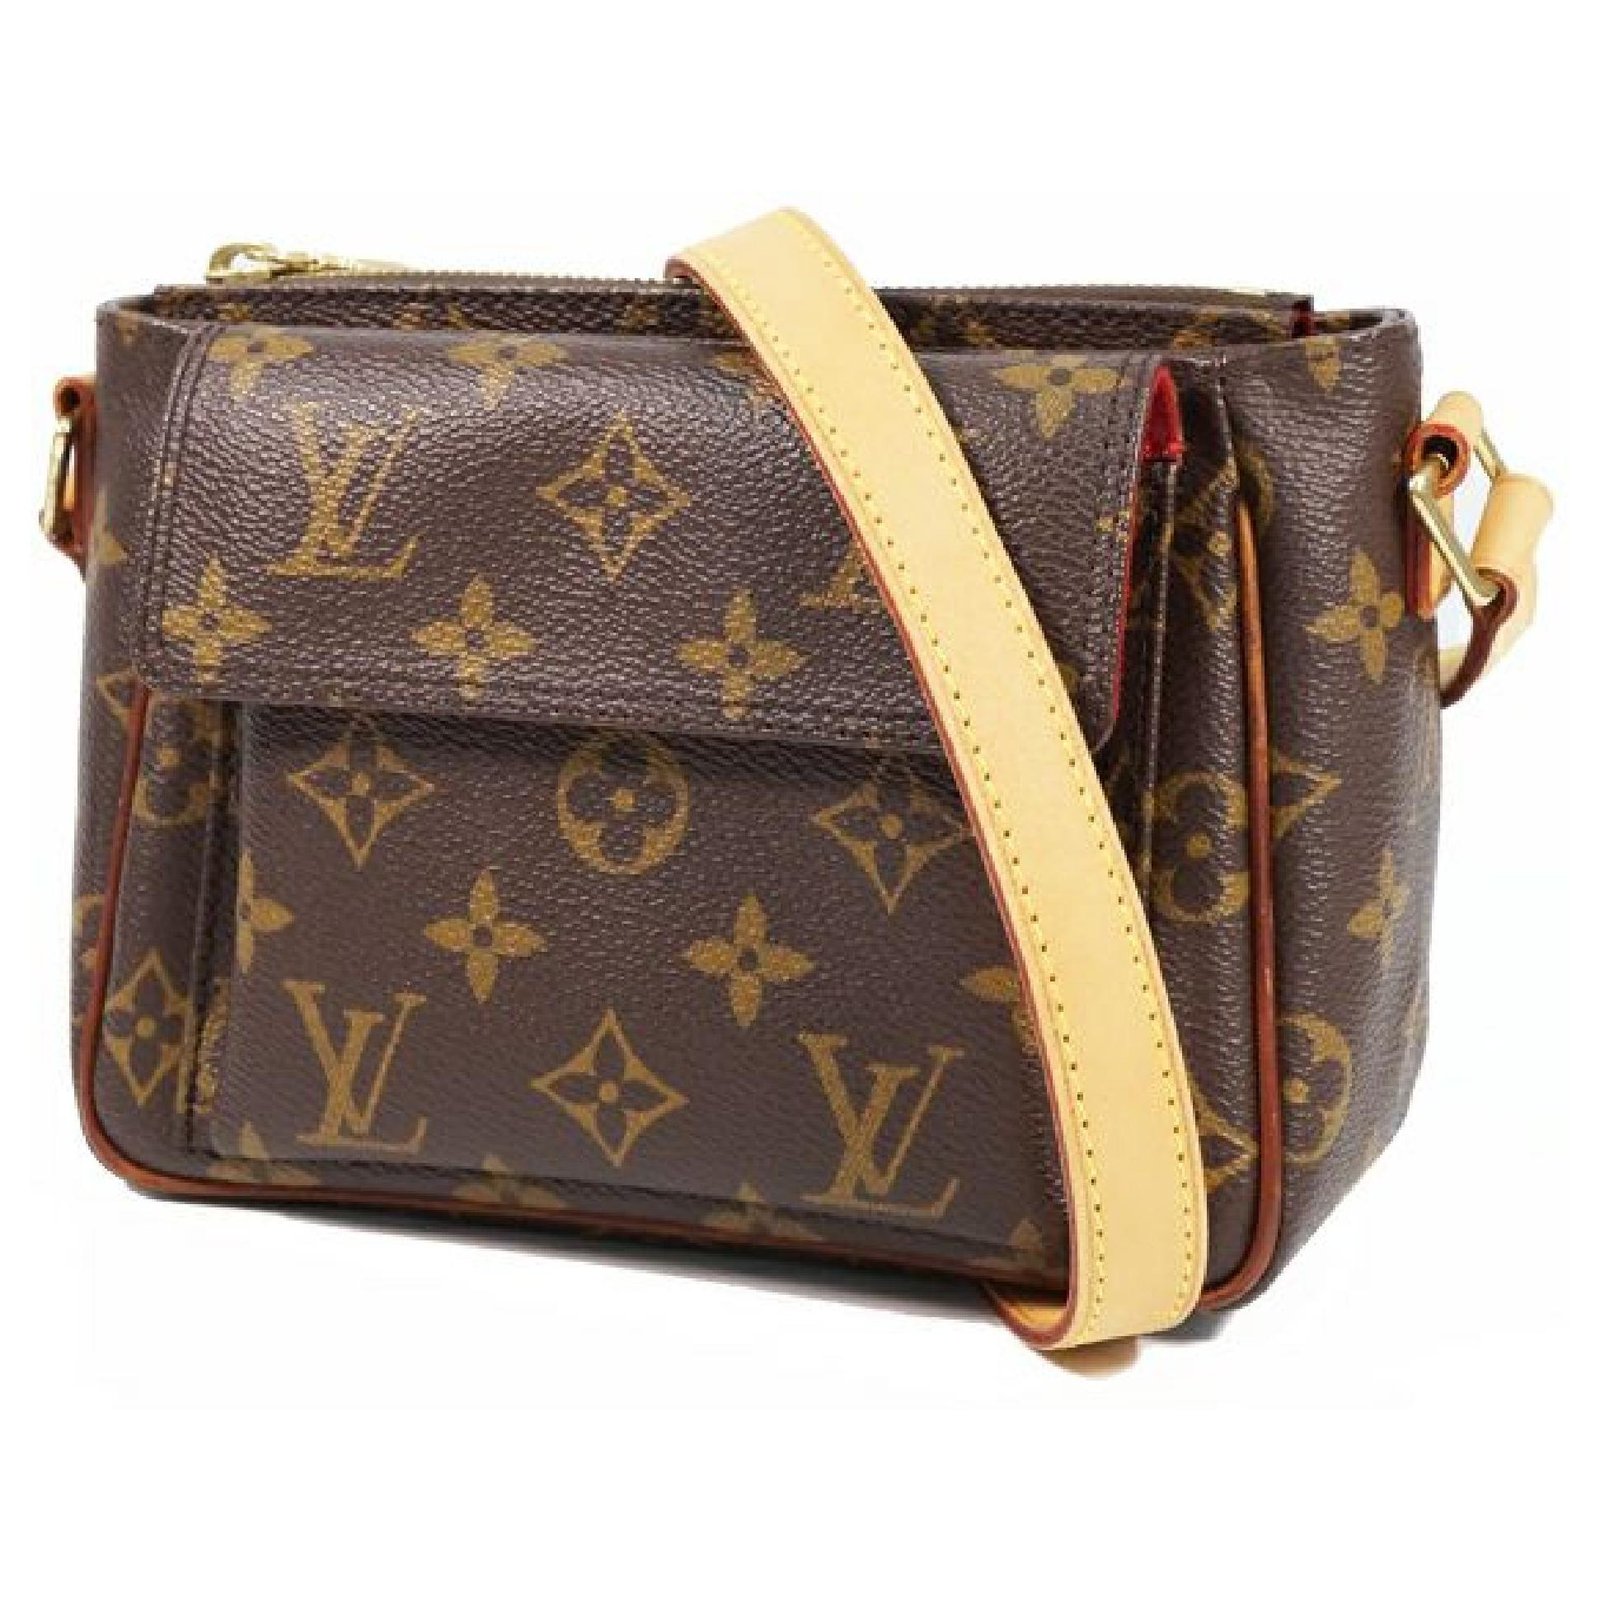 Authentic vintage Louis Vuitton Hudson PM shoulder bag, Women's